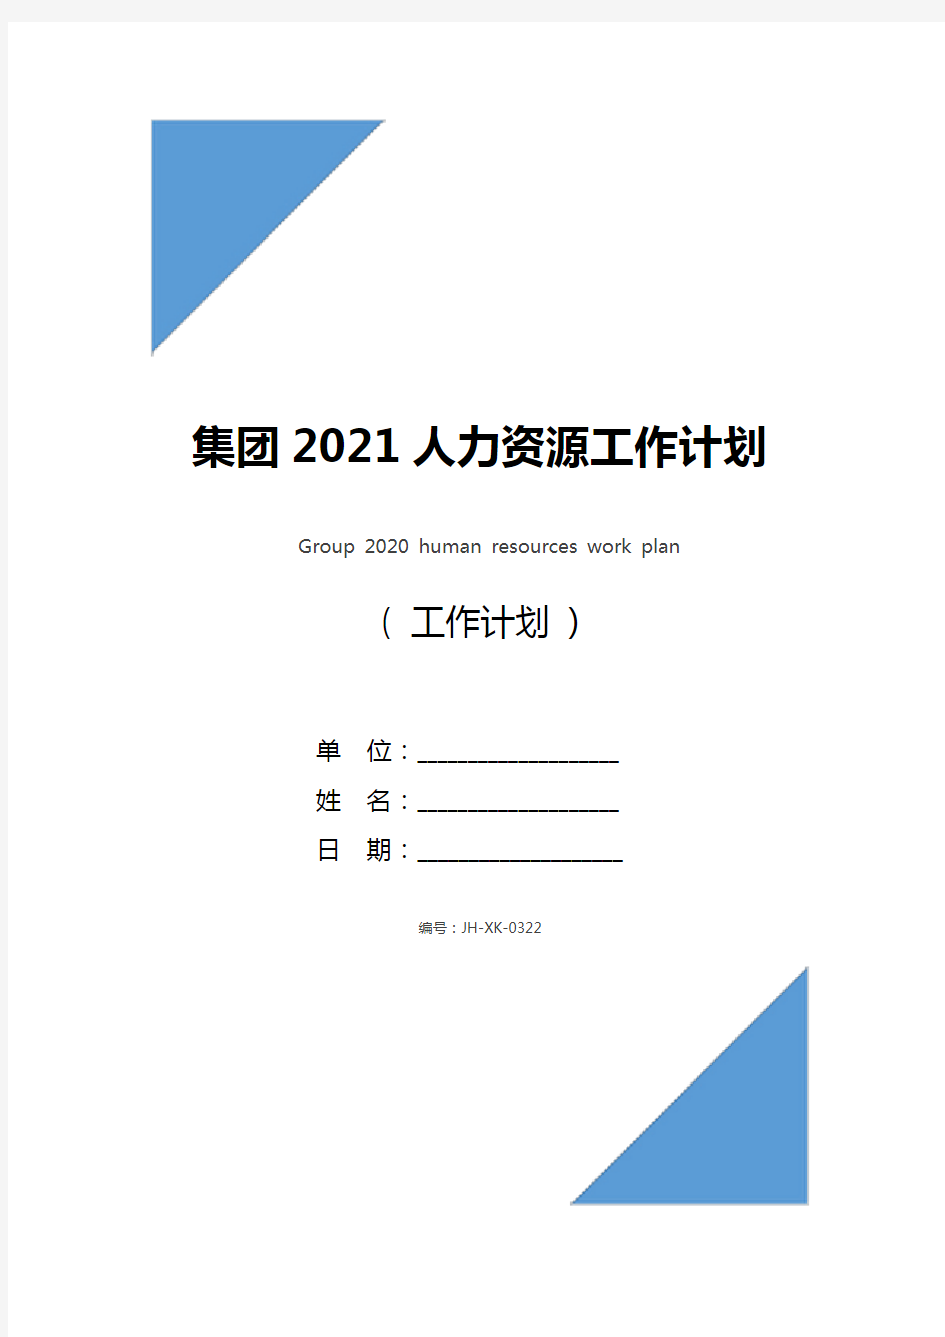 集团2021人力资源工作计划(最新版)